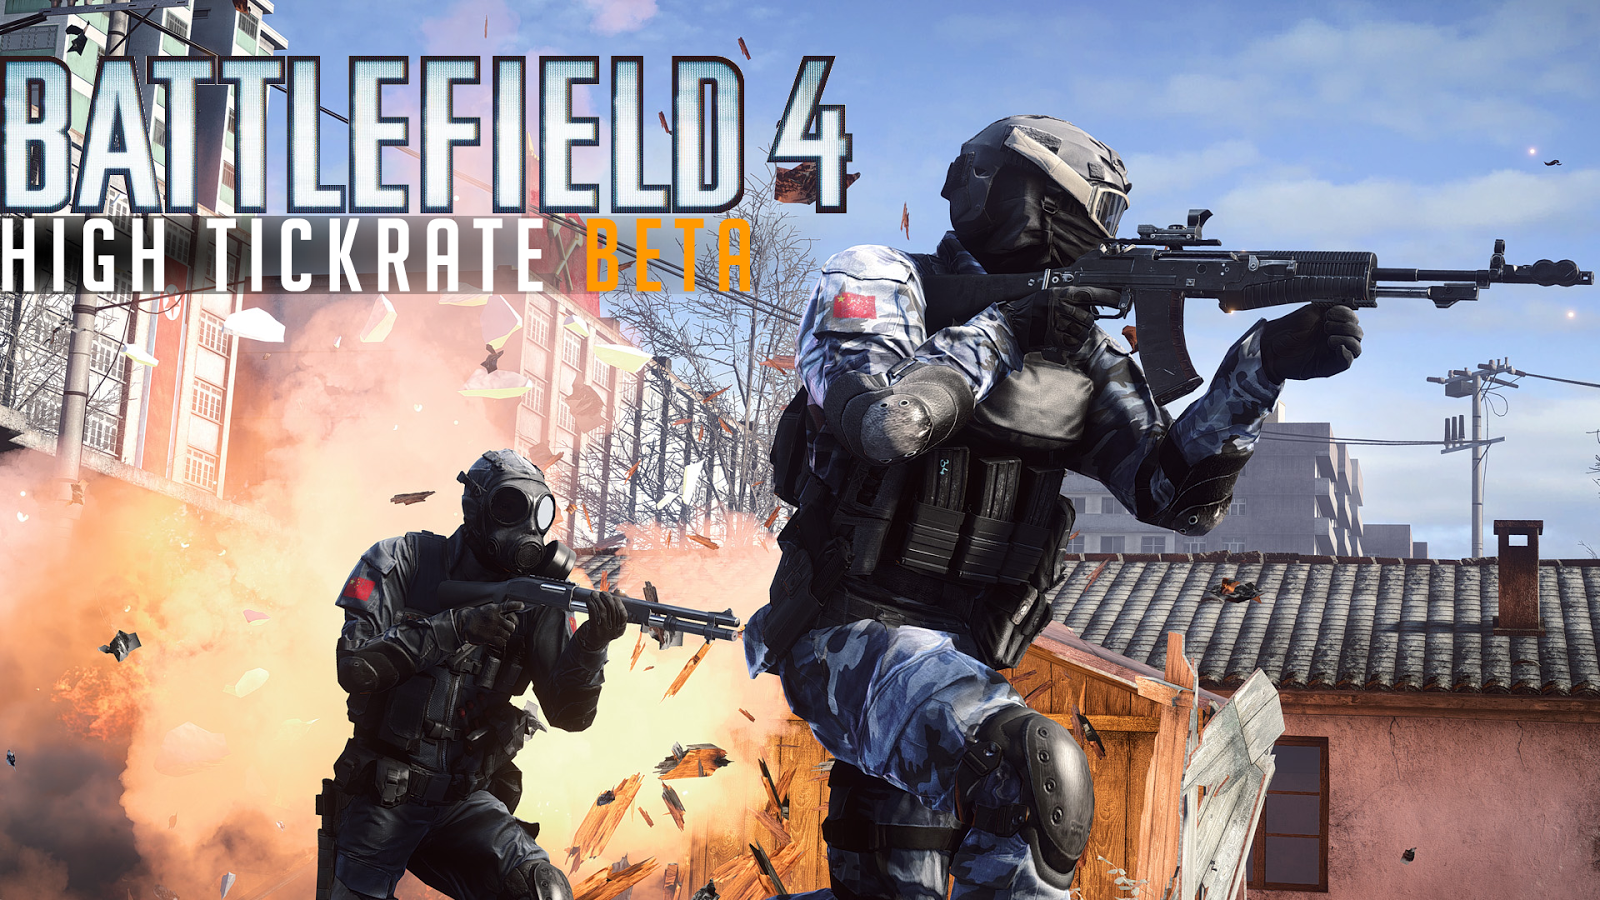 Servidores com alta taxa de tickrate começarão a ser implementados no Battlefield 4